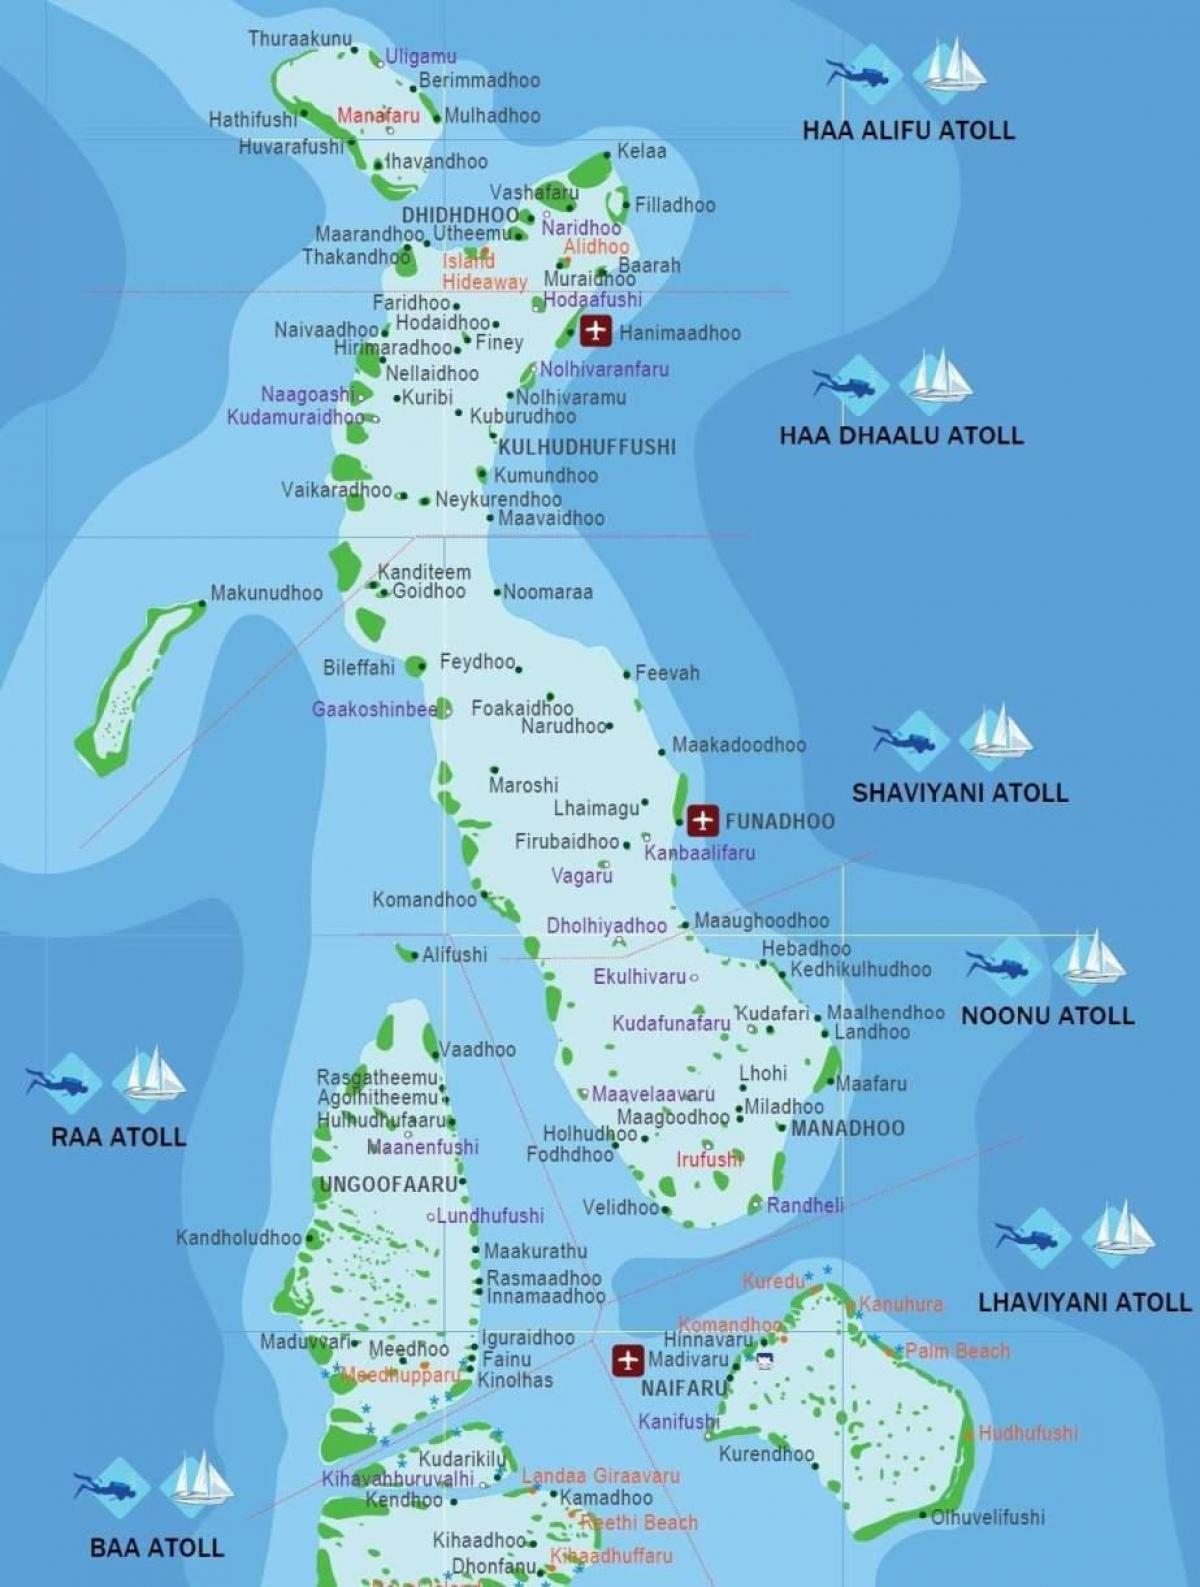 نقشه کامل از مالدیو